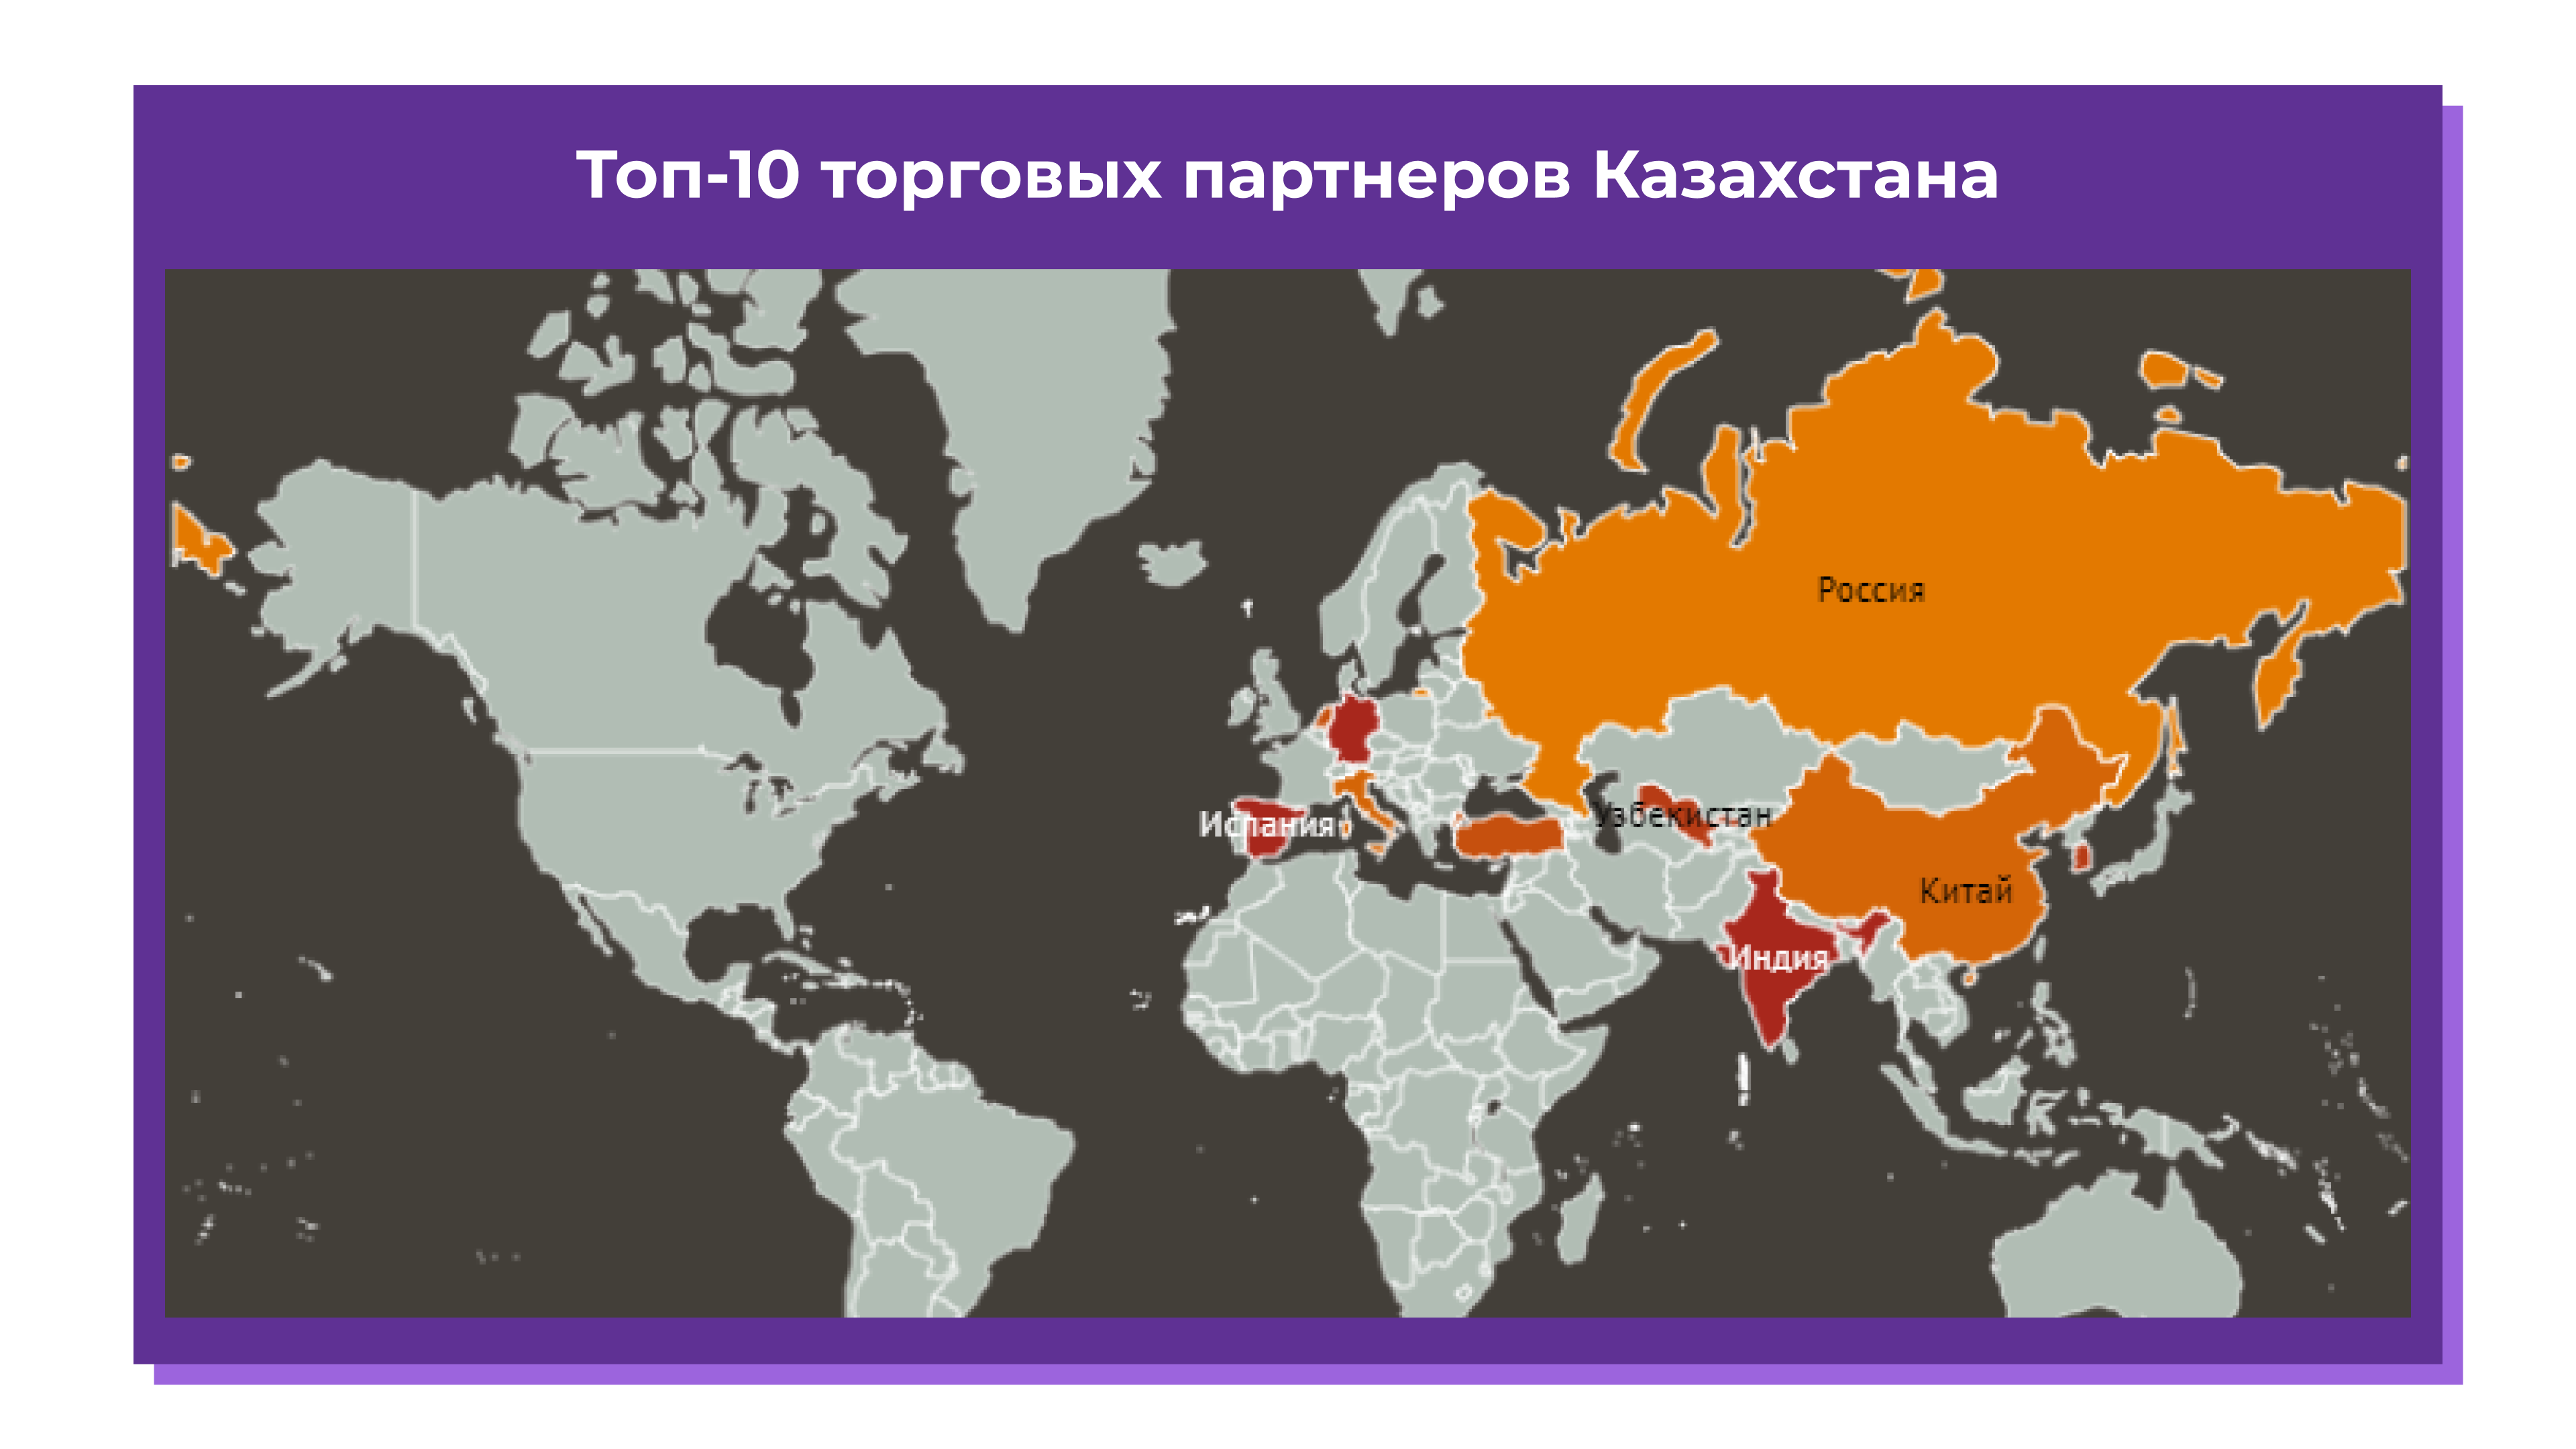 ТОП-10 торговых партнеров Казахстана